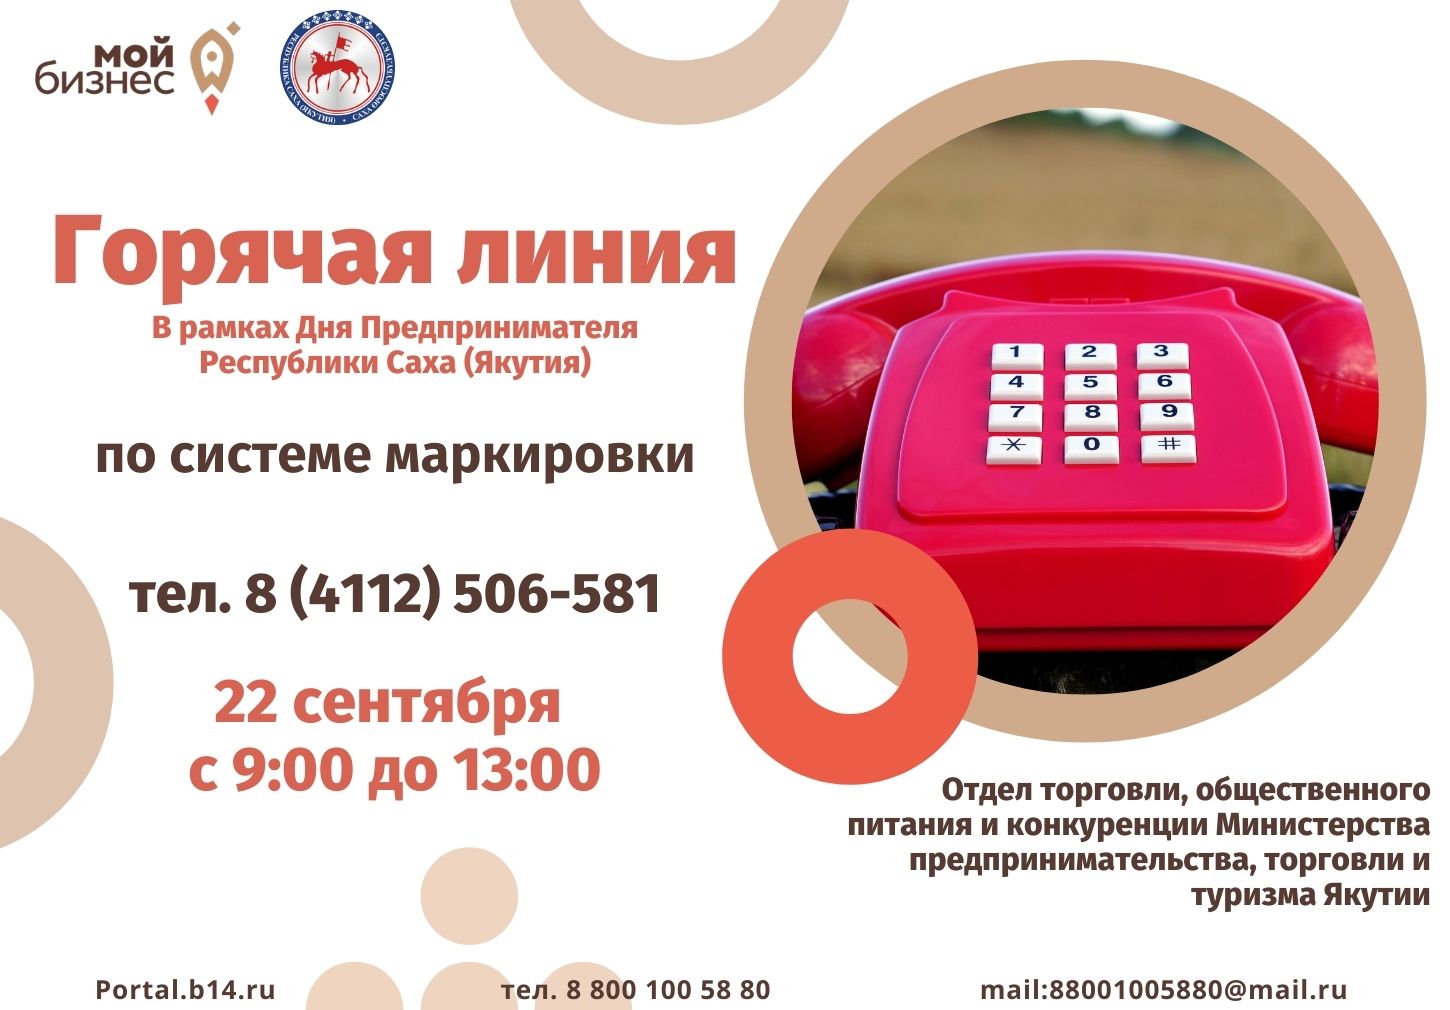 Номер телефона горячей линии ульяновска